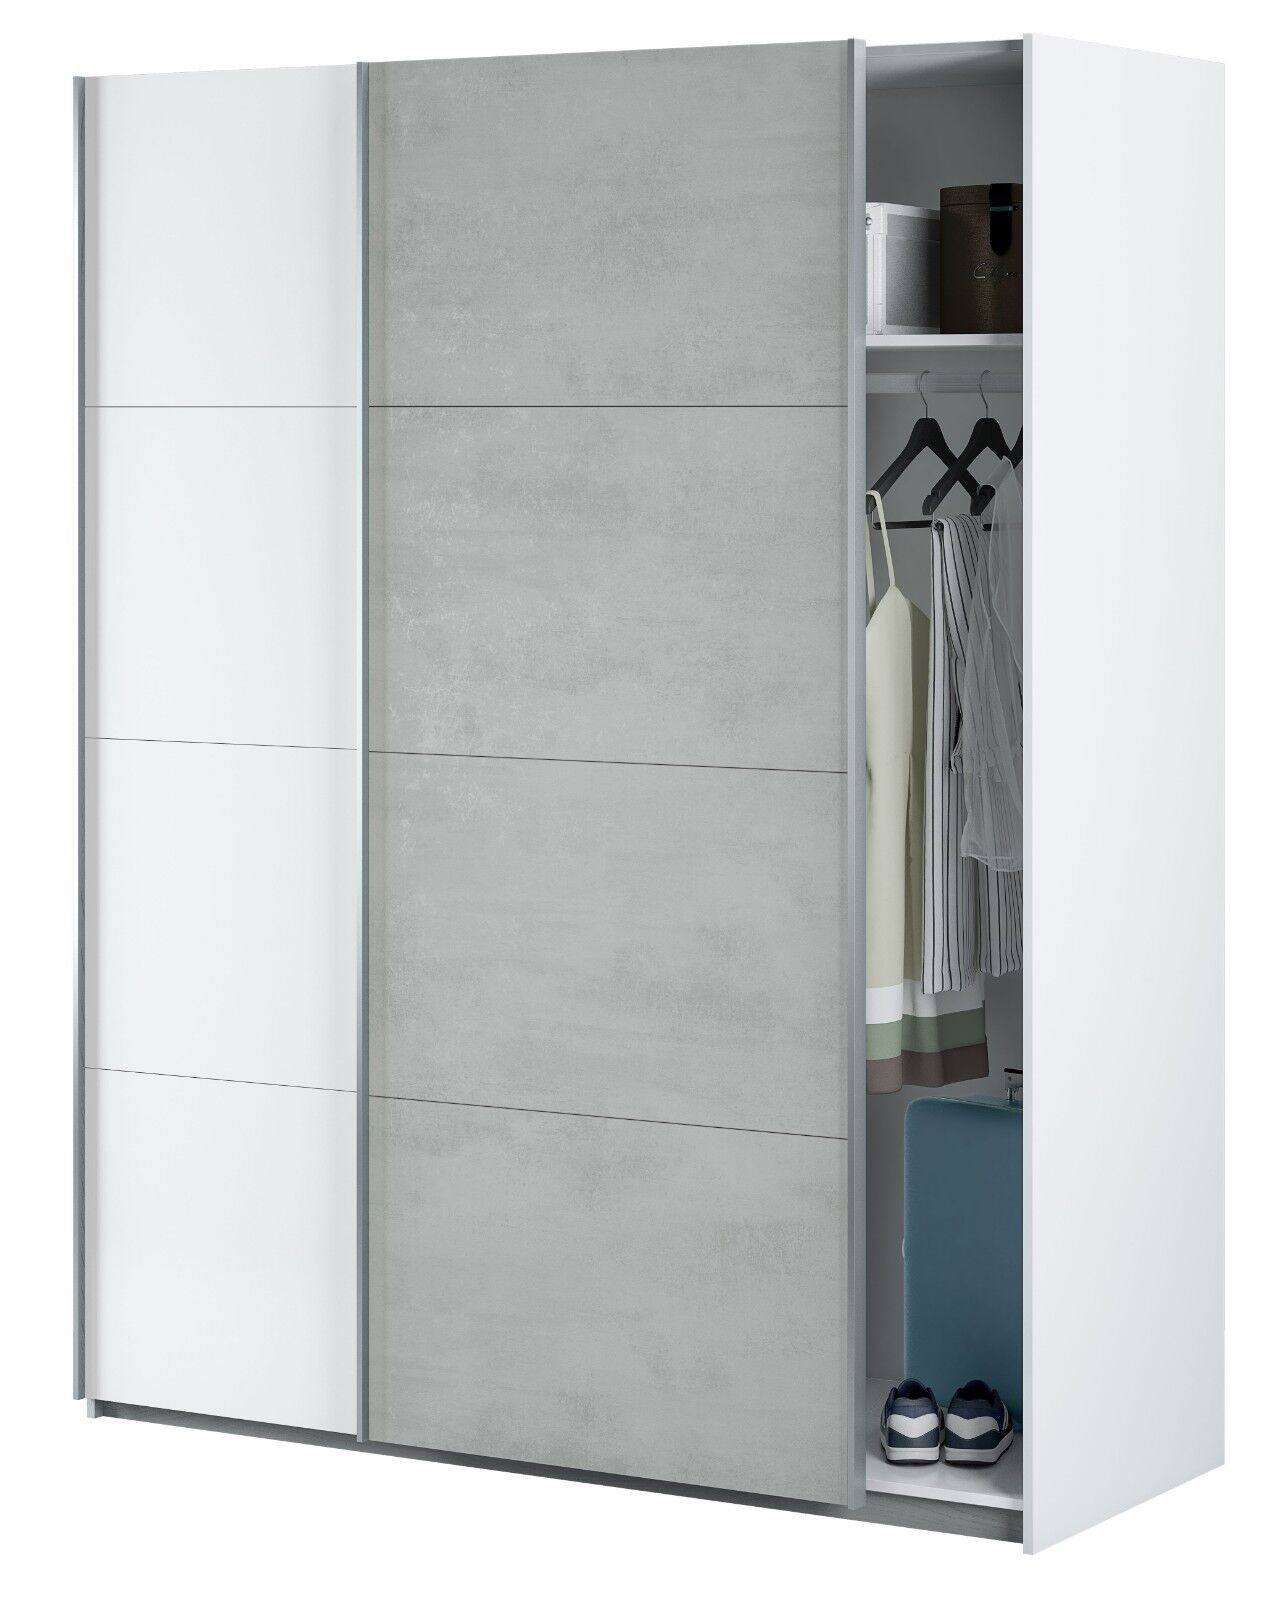 Armario puertas correderas color blanco y cemento estilo moderno 150x60x200 cm